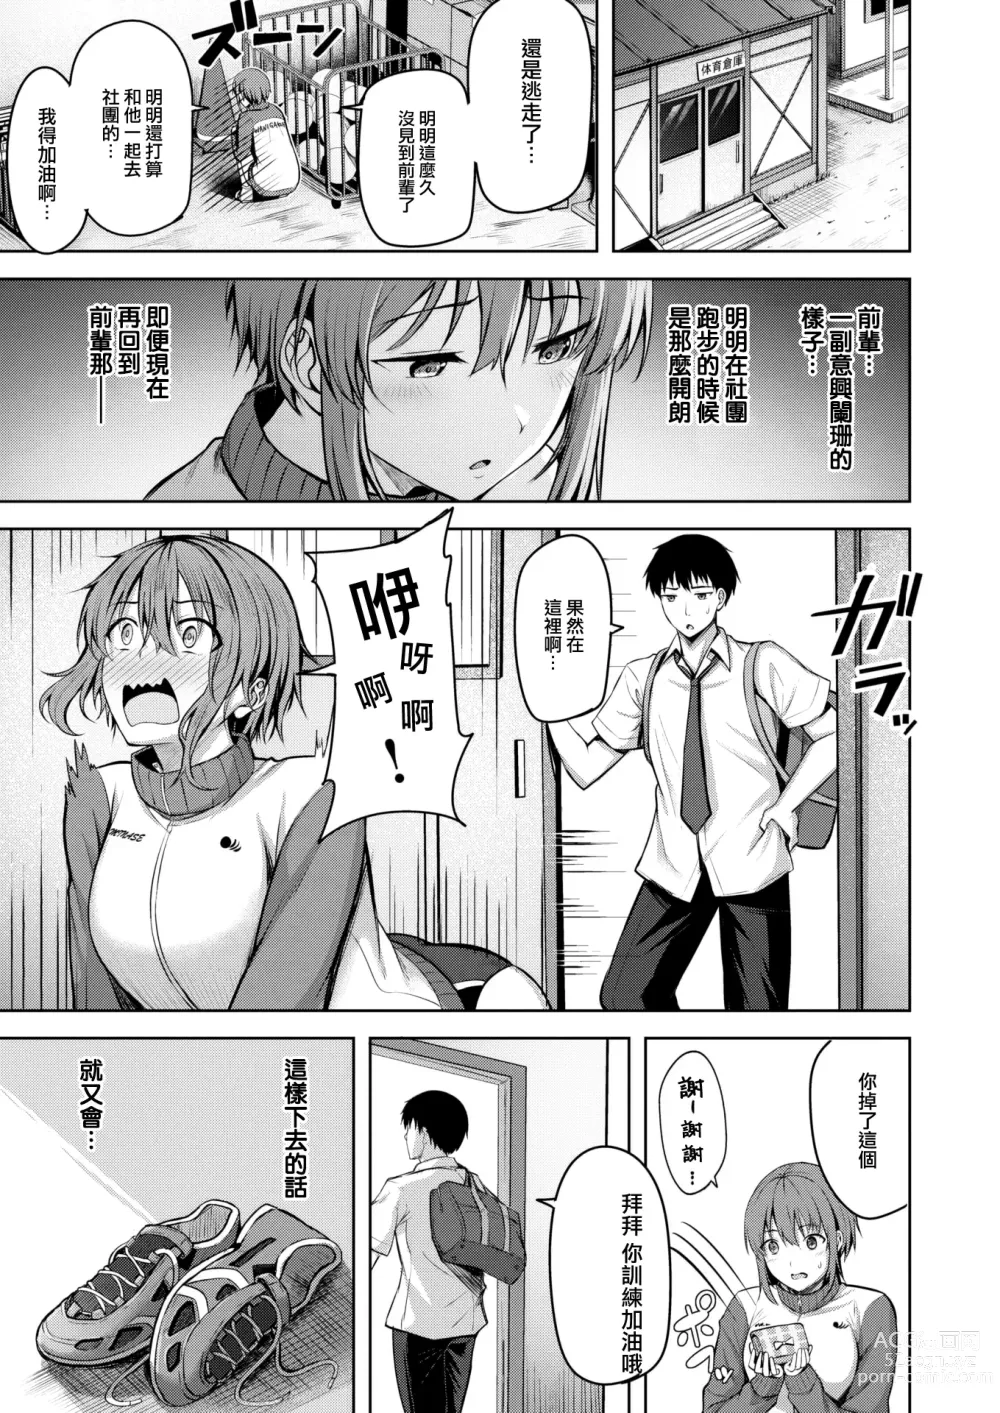 Page 6 of manga Start line